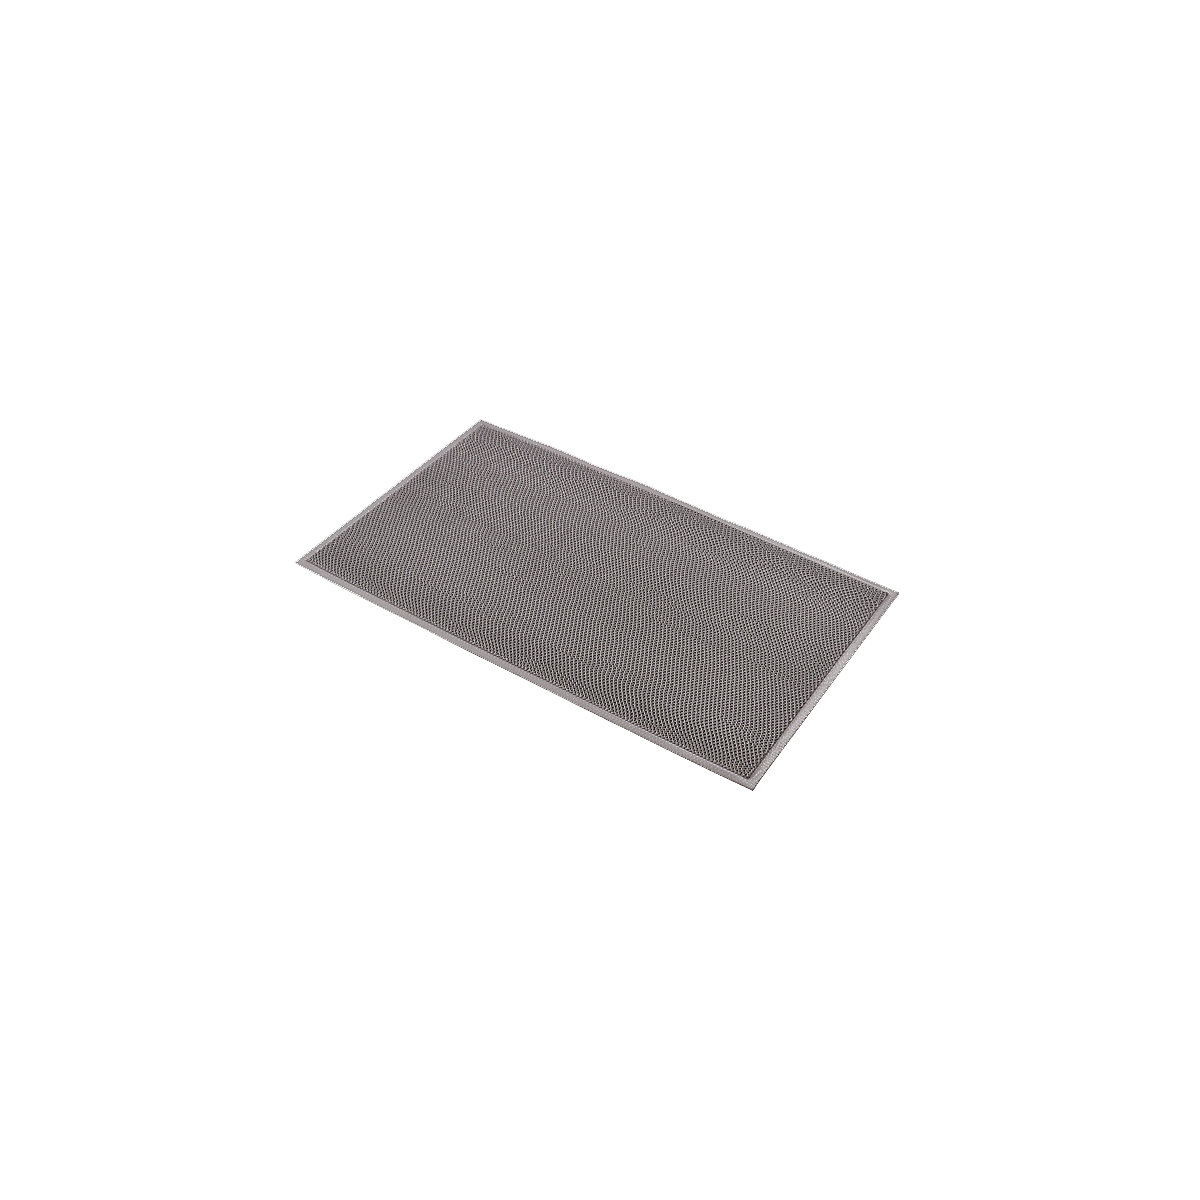 Vuilvangmat – NOTRAX, grijs, 1500 x 900 mm-4